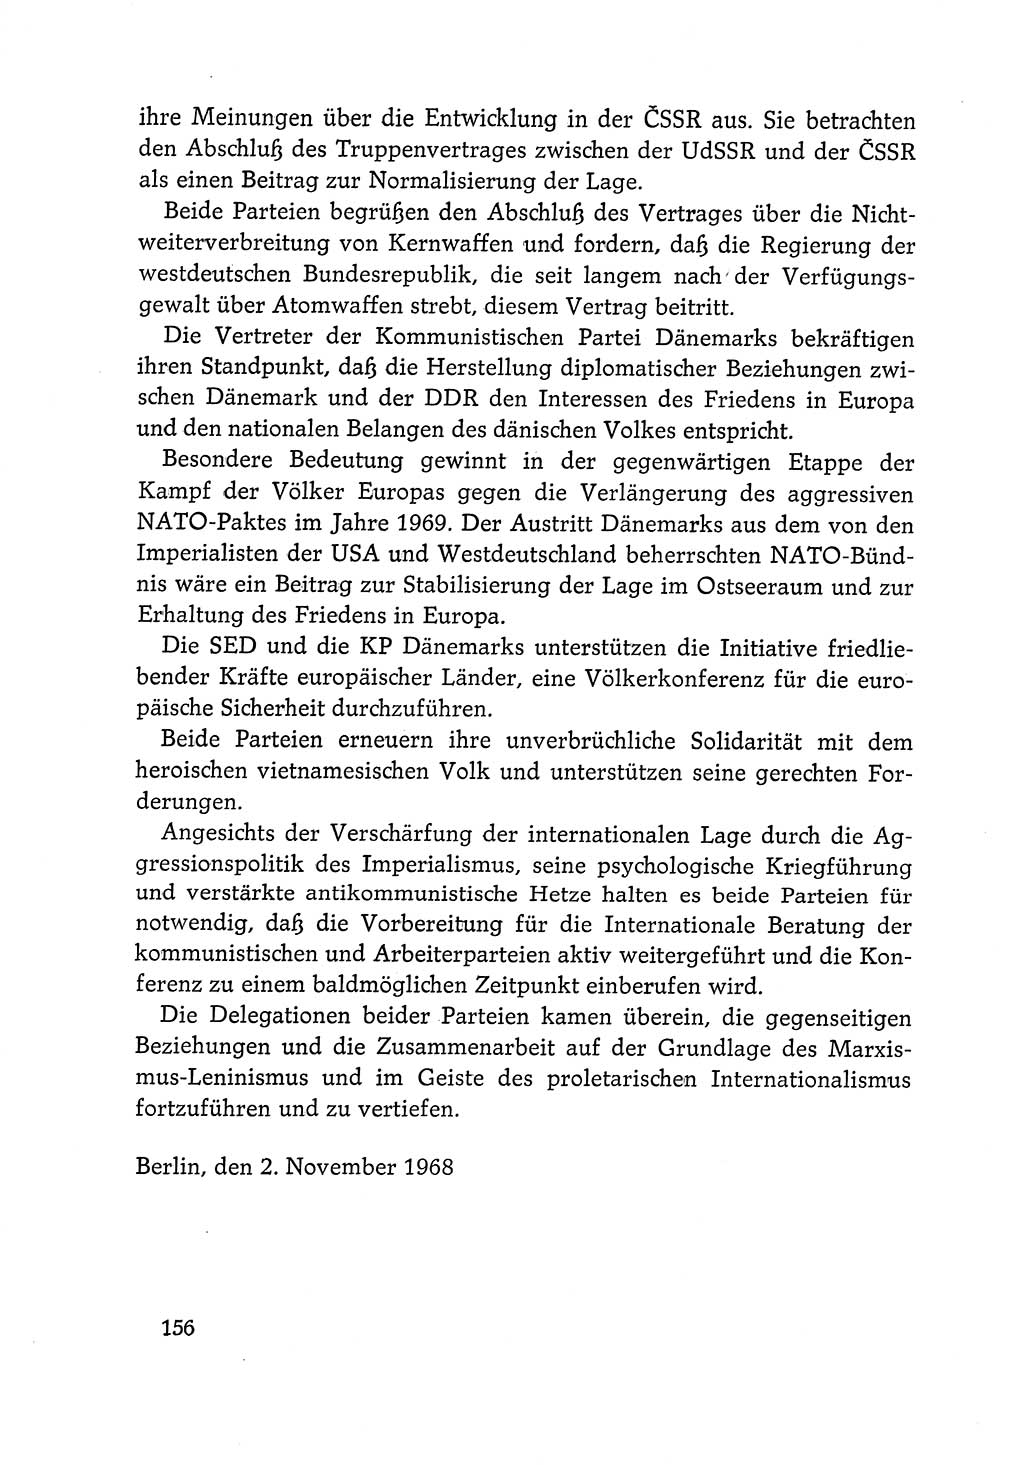 Dokumente der Sozialistischen Einheitspartei Deutschlands (SED) [Deutsche Demokratische Republik (DDR)] 1968-1969, Seite 156 (Dok. SED DDR 1968-1969, S. 156)